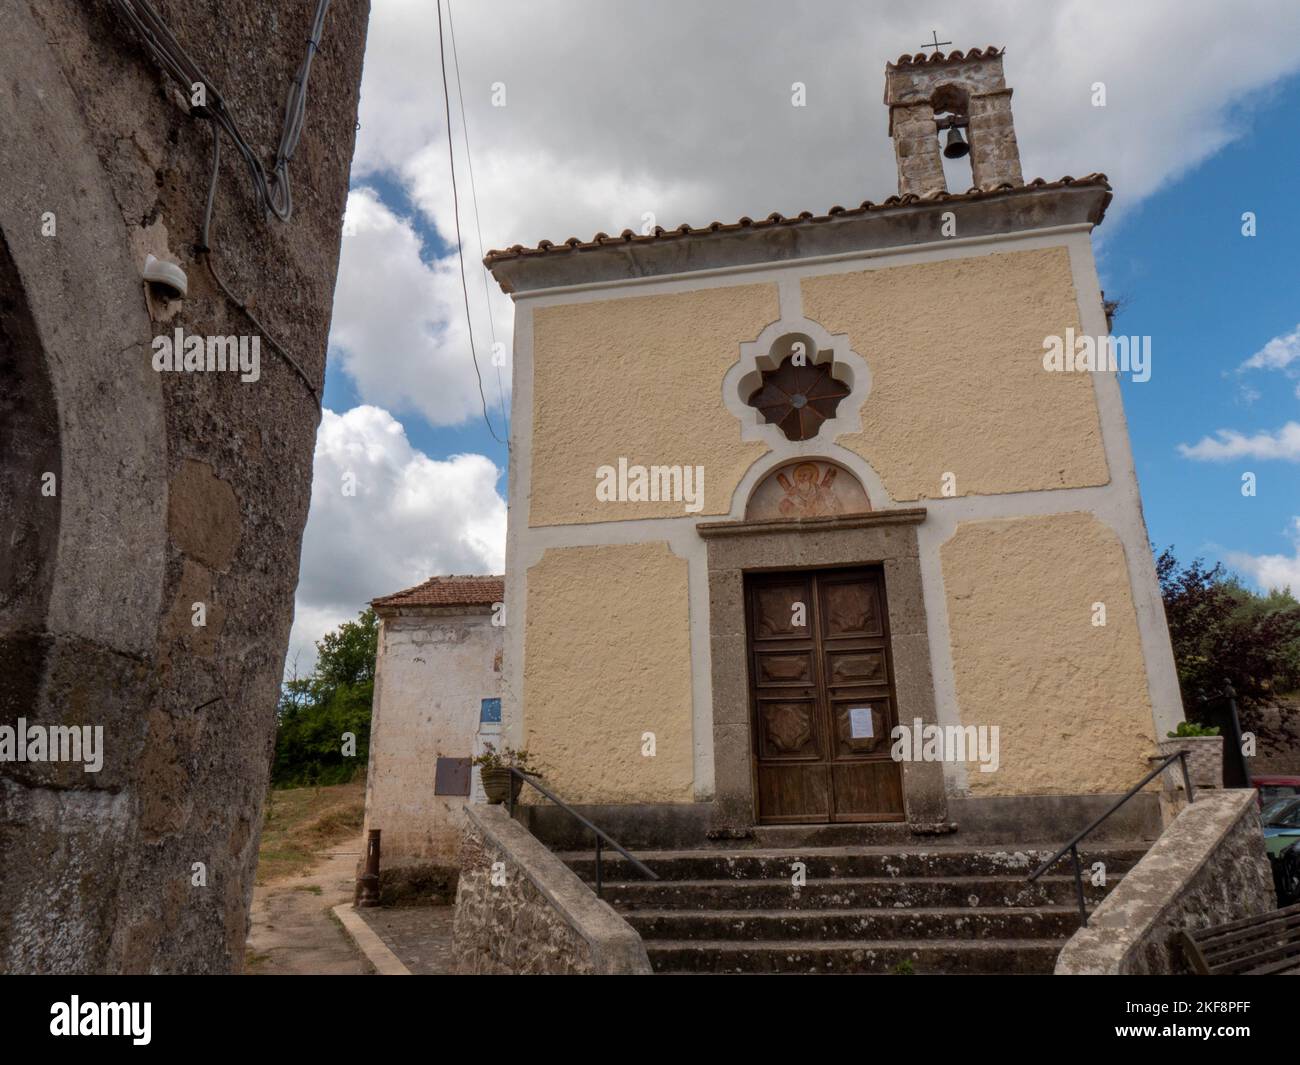 Pietravairano, ein mittelalterliches Dorf in der Provinz Caserta, Italien. Stockfoto